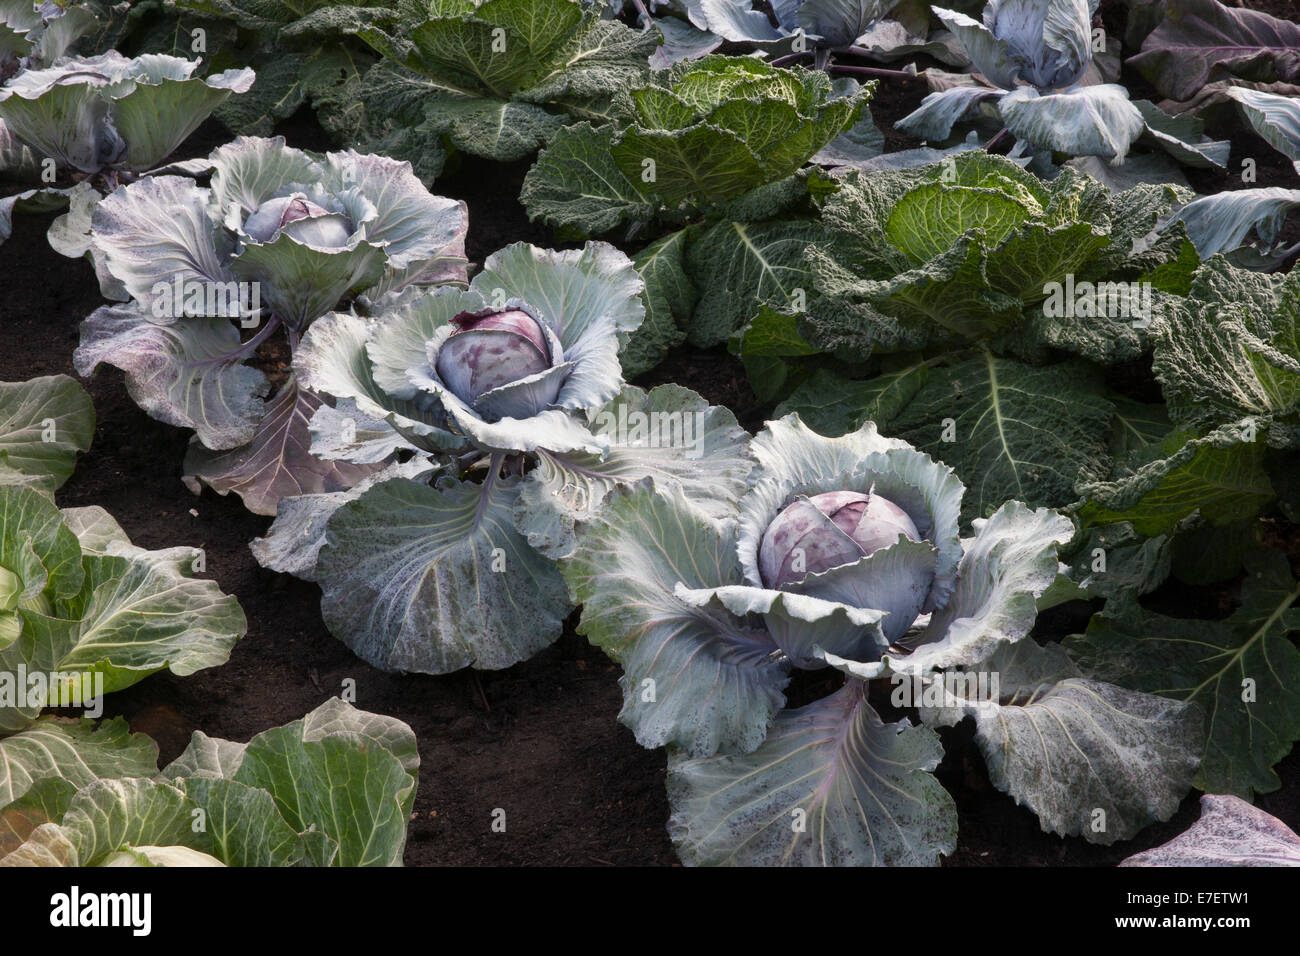 Kleine Gemüsezuteilung Gartenvegetationsfläche mit verschiedenen Kohlsorten in Reihen - Roter Juwel - Serpentin und Romanov - Sommer Herbst Großbritannien Stockfoto